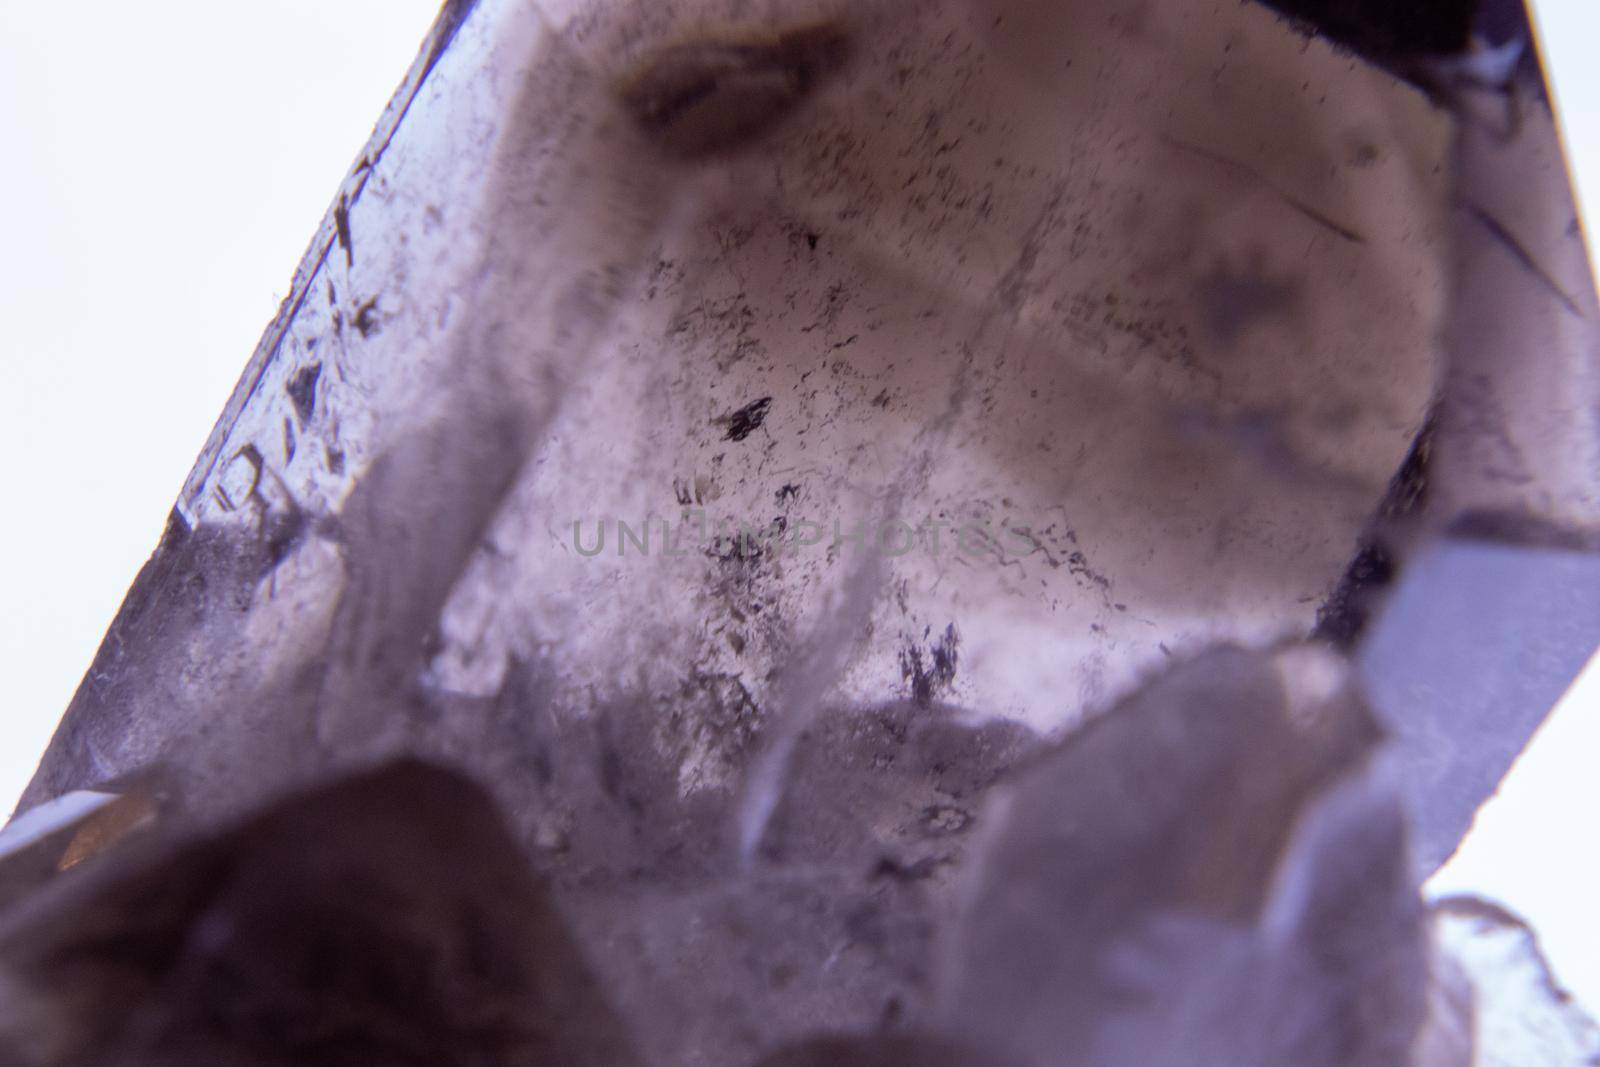 Close up of Black Smoke Quartz Crystal. High quality photo